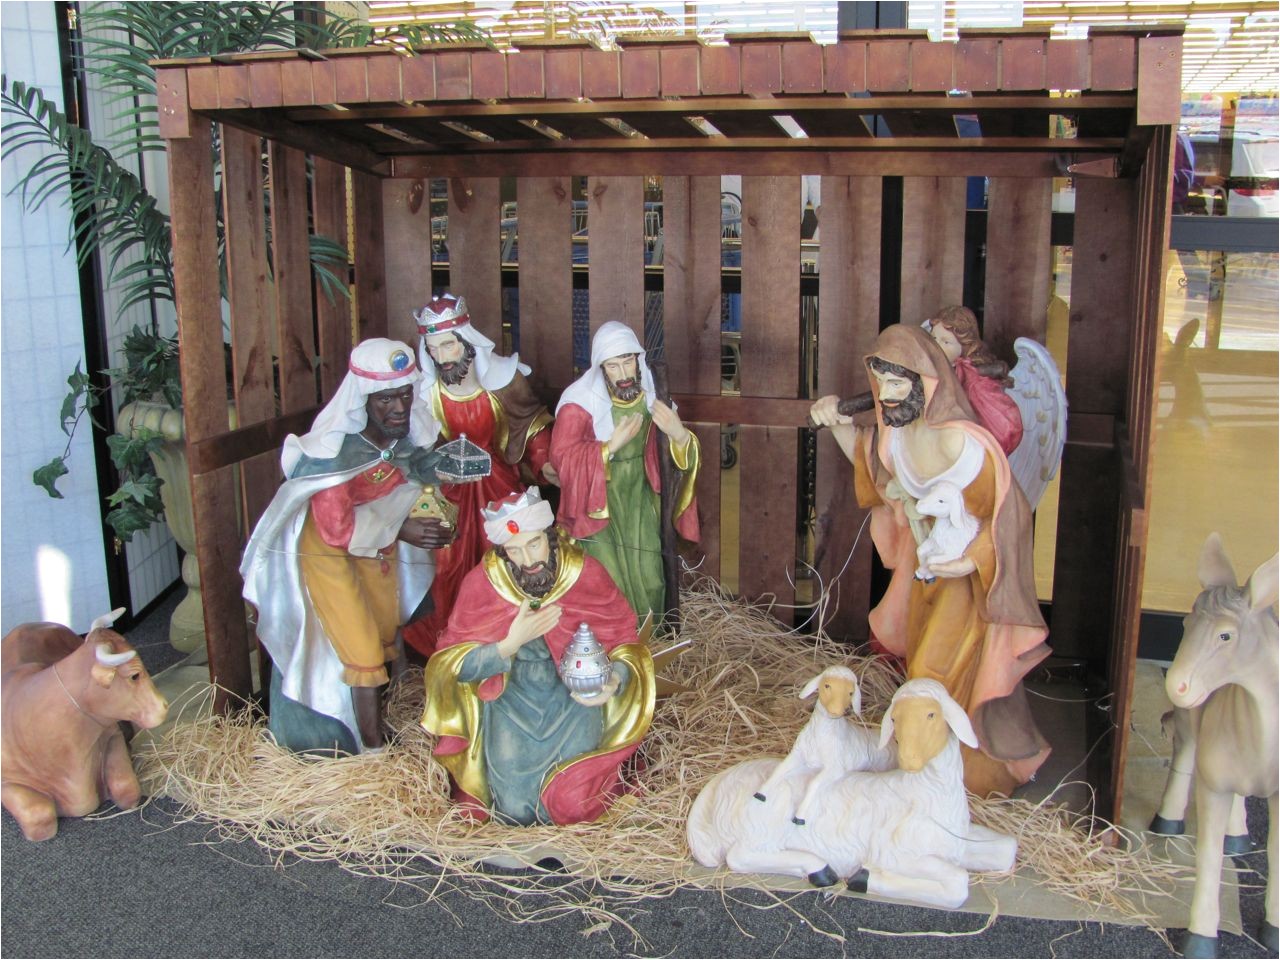 Large Outdoor Nativity Sets Hobby Lobby Hobby Lobby Outdoor Nativity Sets Myideasbedroom Com